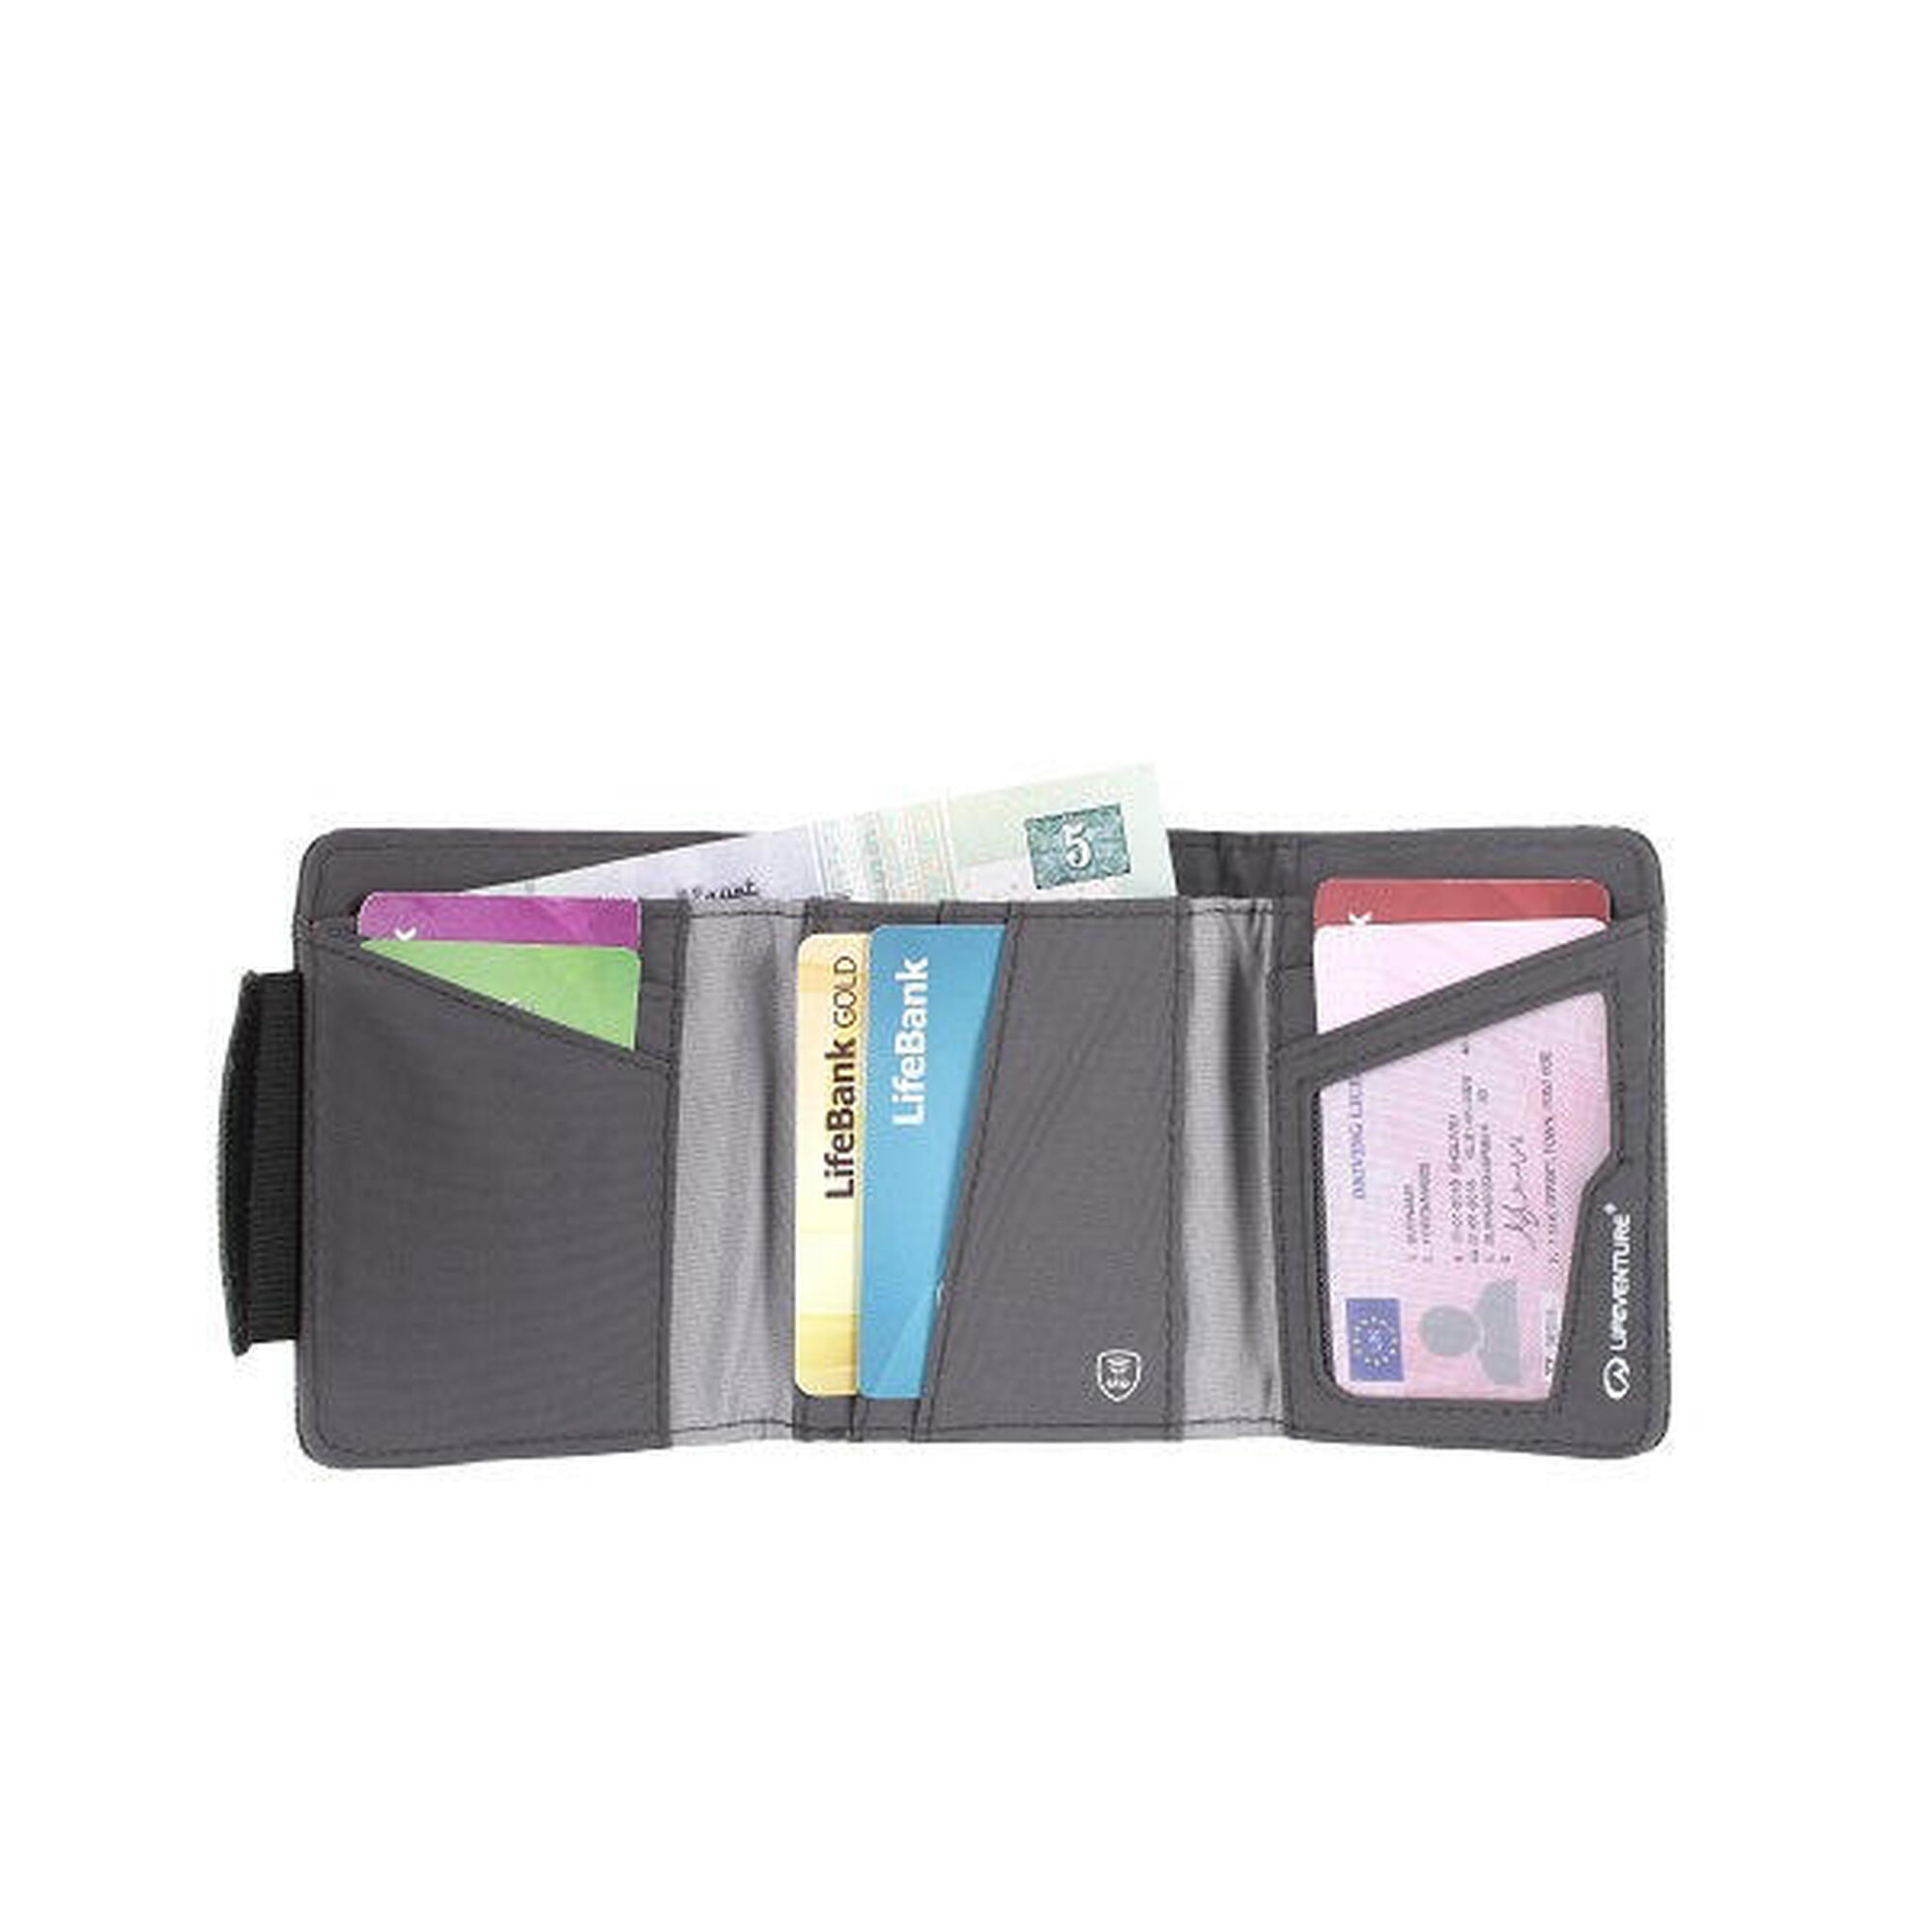 環保防盜RFID卡錢包 (6卡插槽) - 灰色